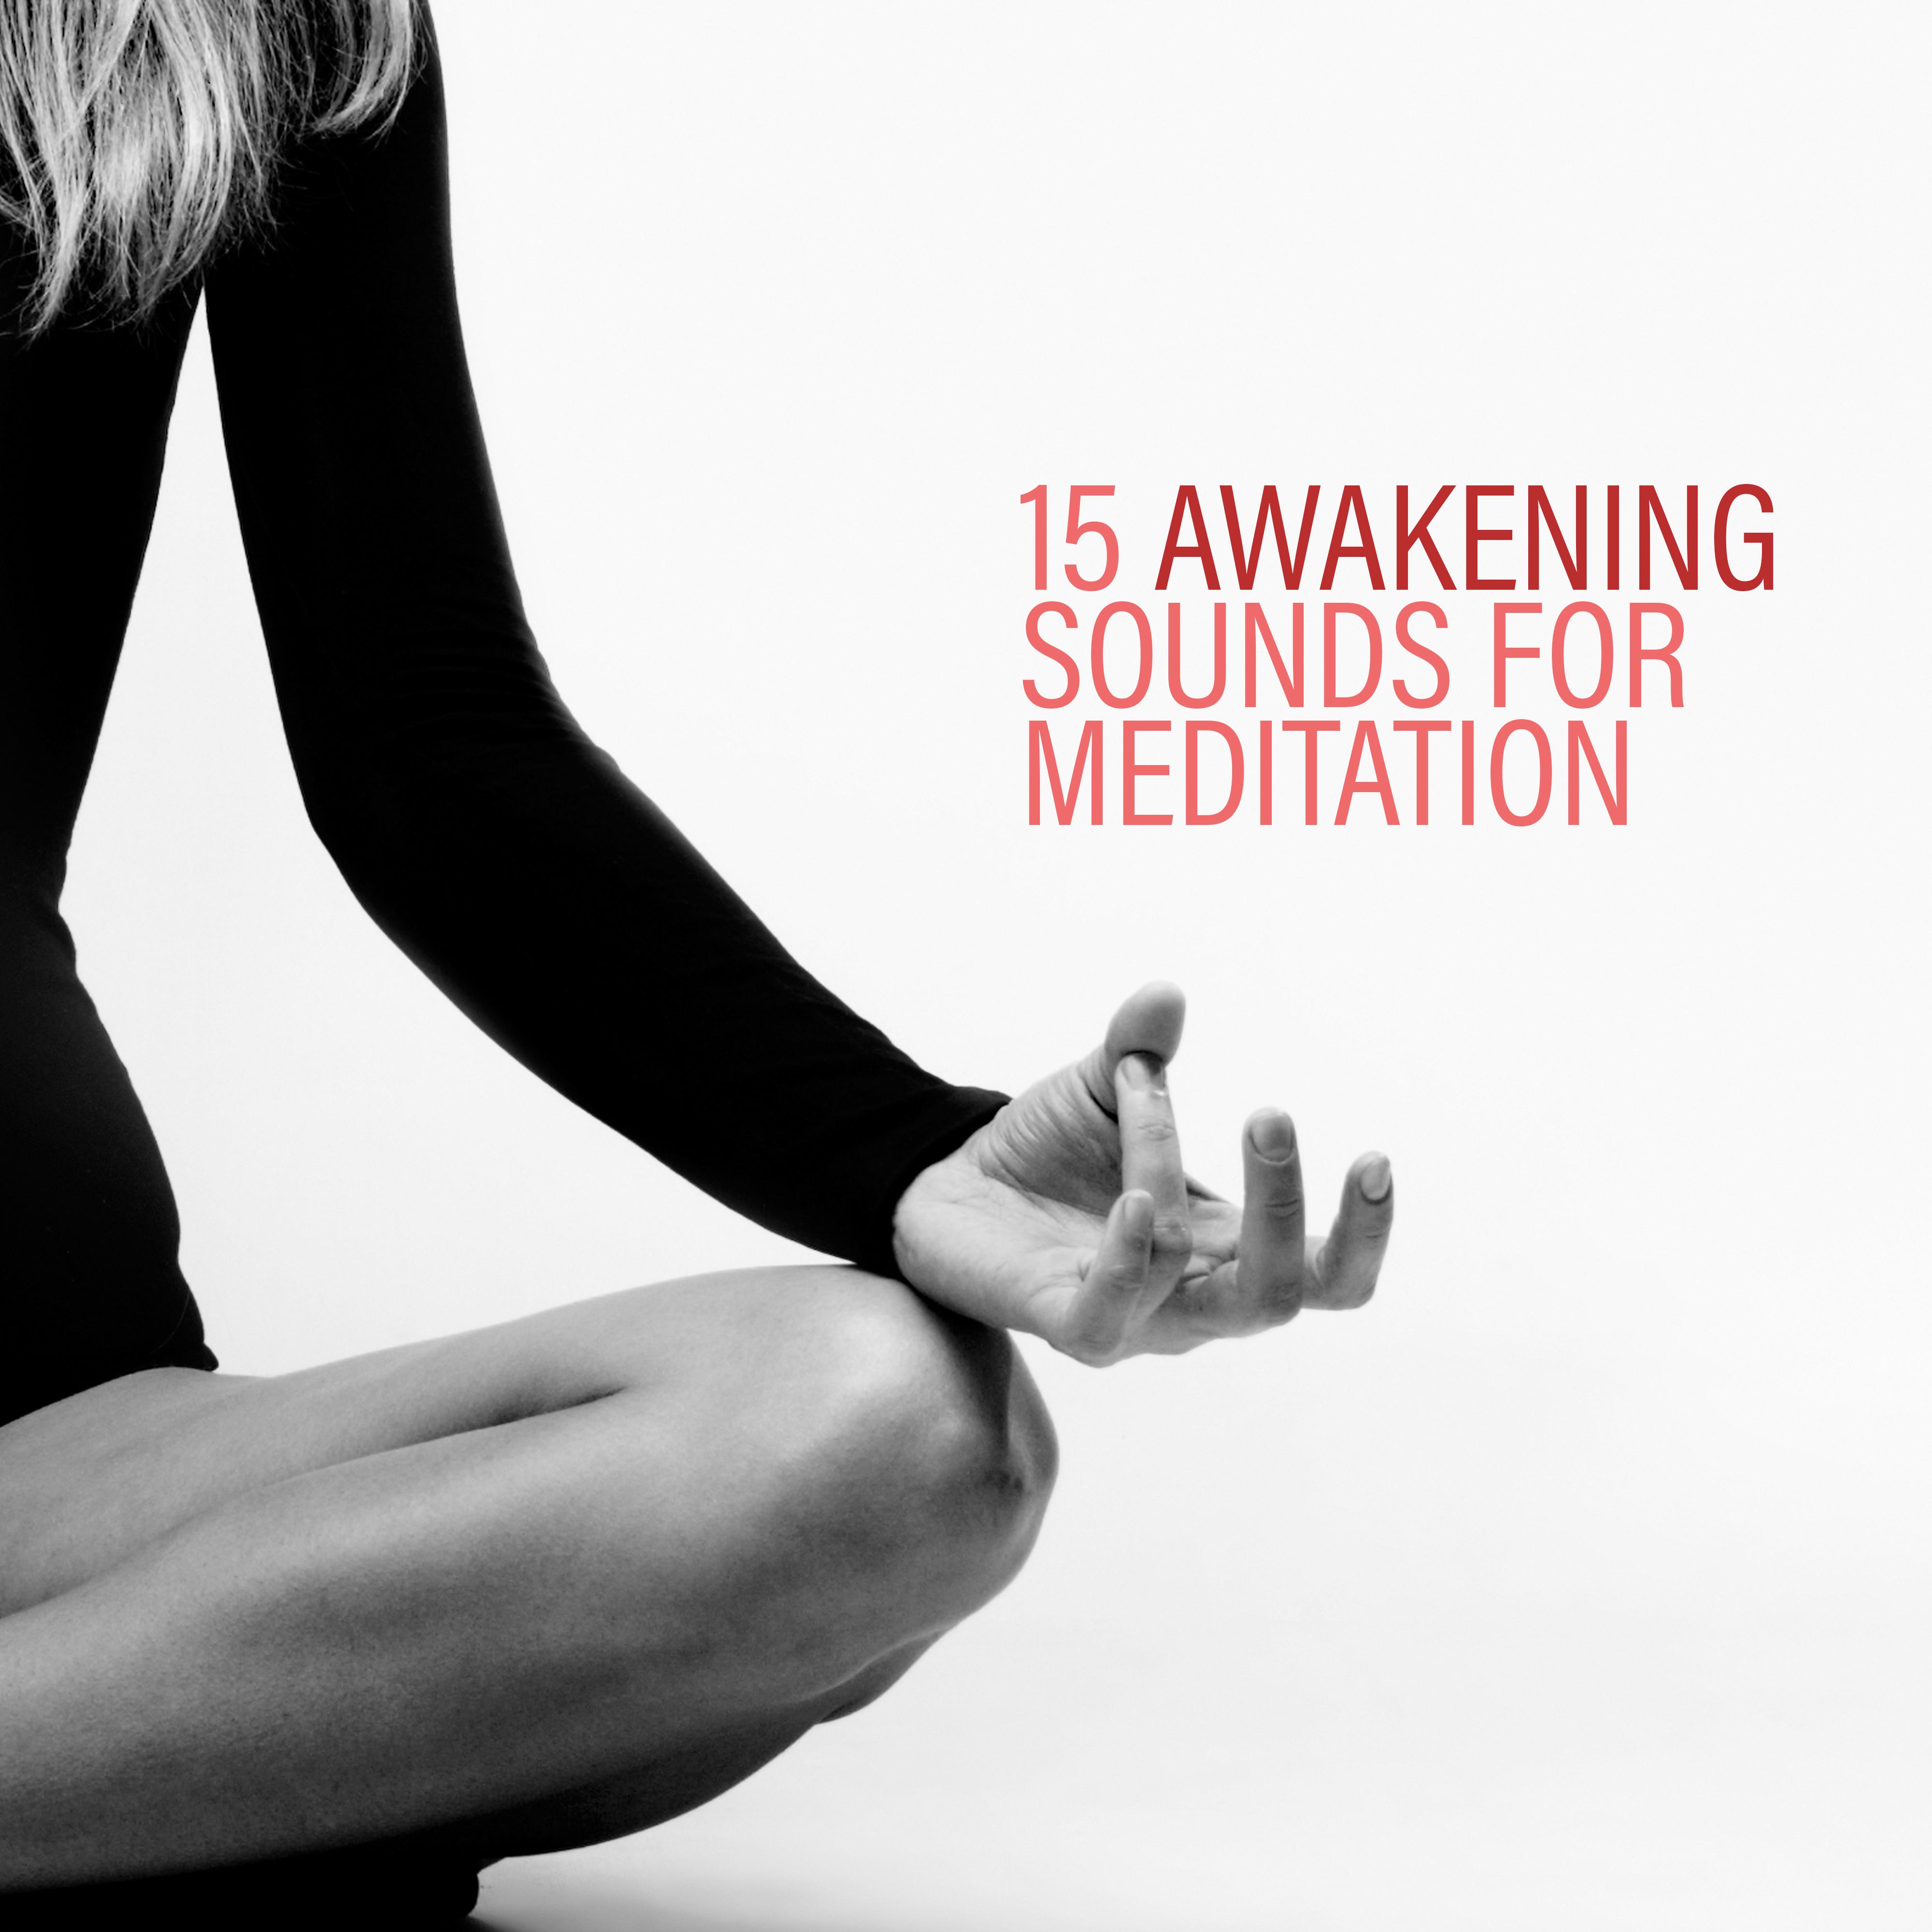 15 Awakening Sounds for Meditation – Yoga Music, Meditation Music Zone, Spiritual Music for Relaxation, Zen, Inner Harmony